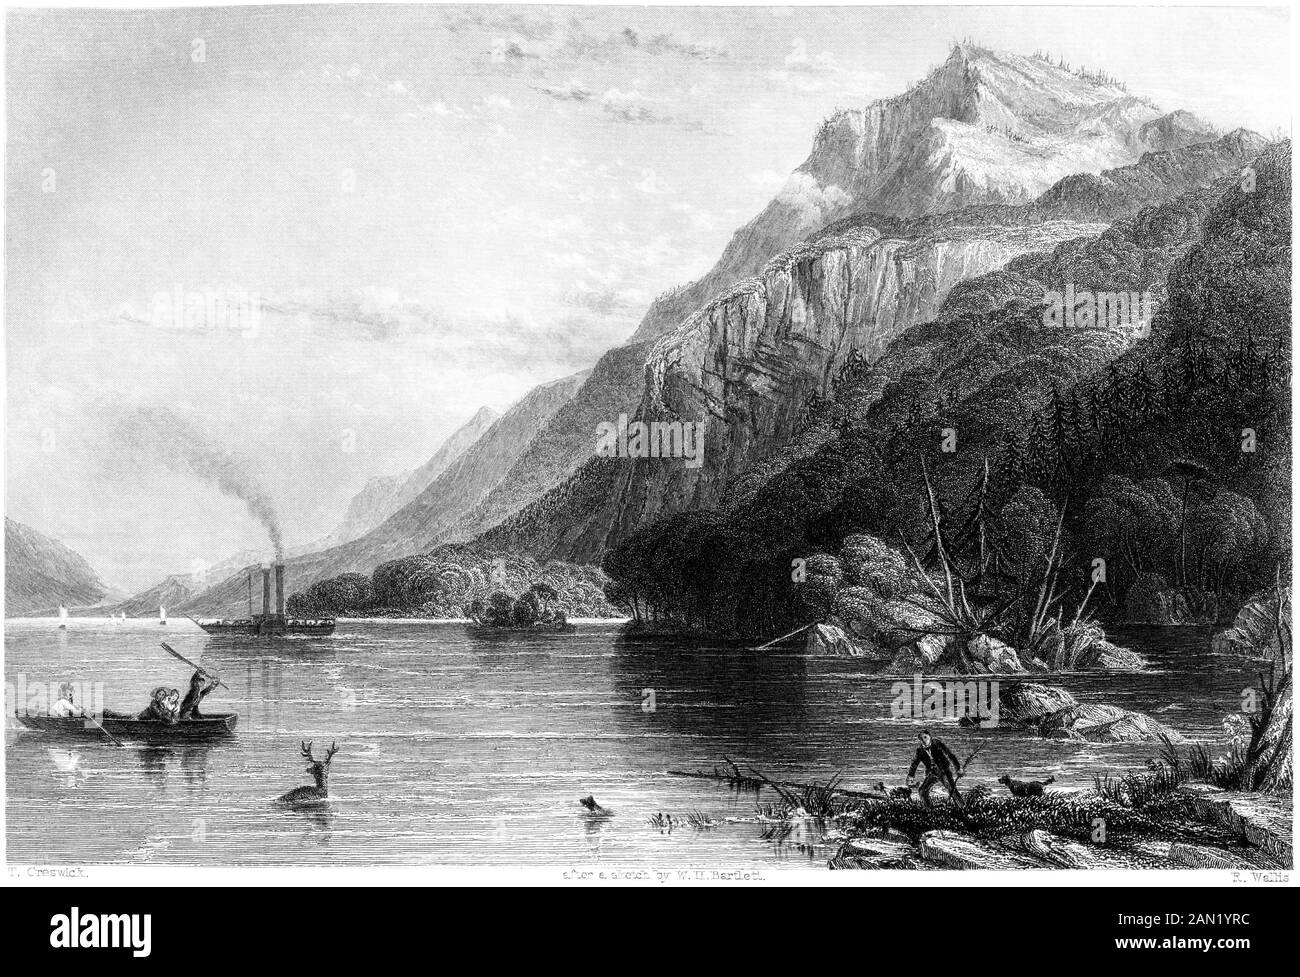 Un grabado de Black Mountain, (Lake George) EE.UU. Escaneado a alta resolución. de un libro impreso en 1840. Se cree libre de derechos de autor. Foto de stock